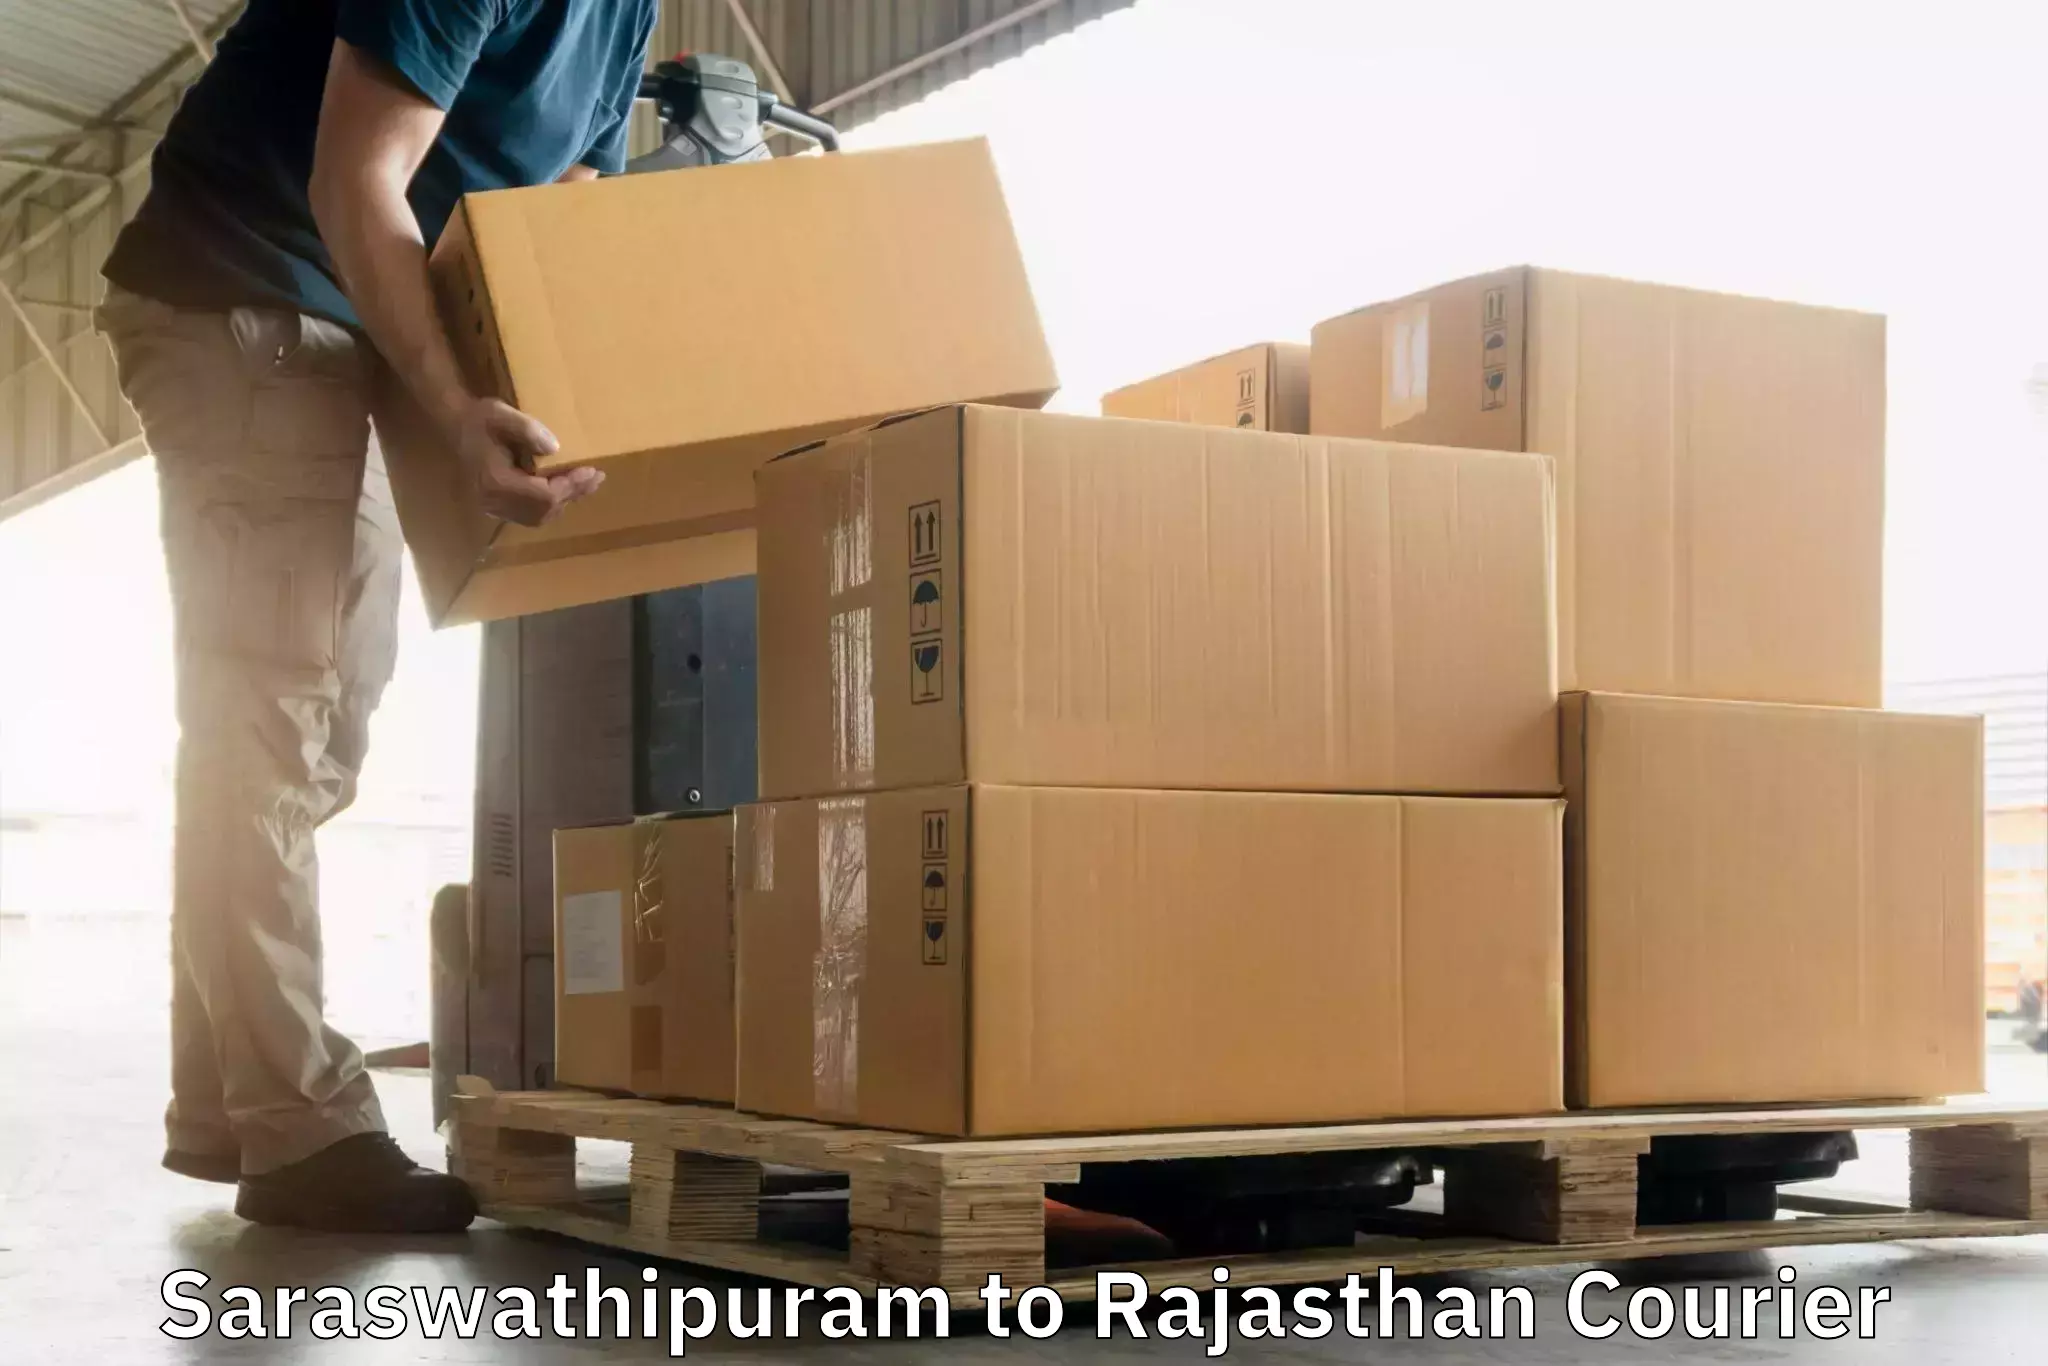 Express postal services Saraswathipuram to Rajasthan